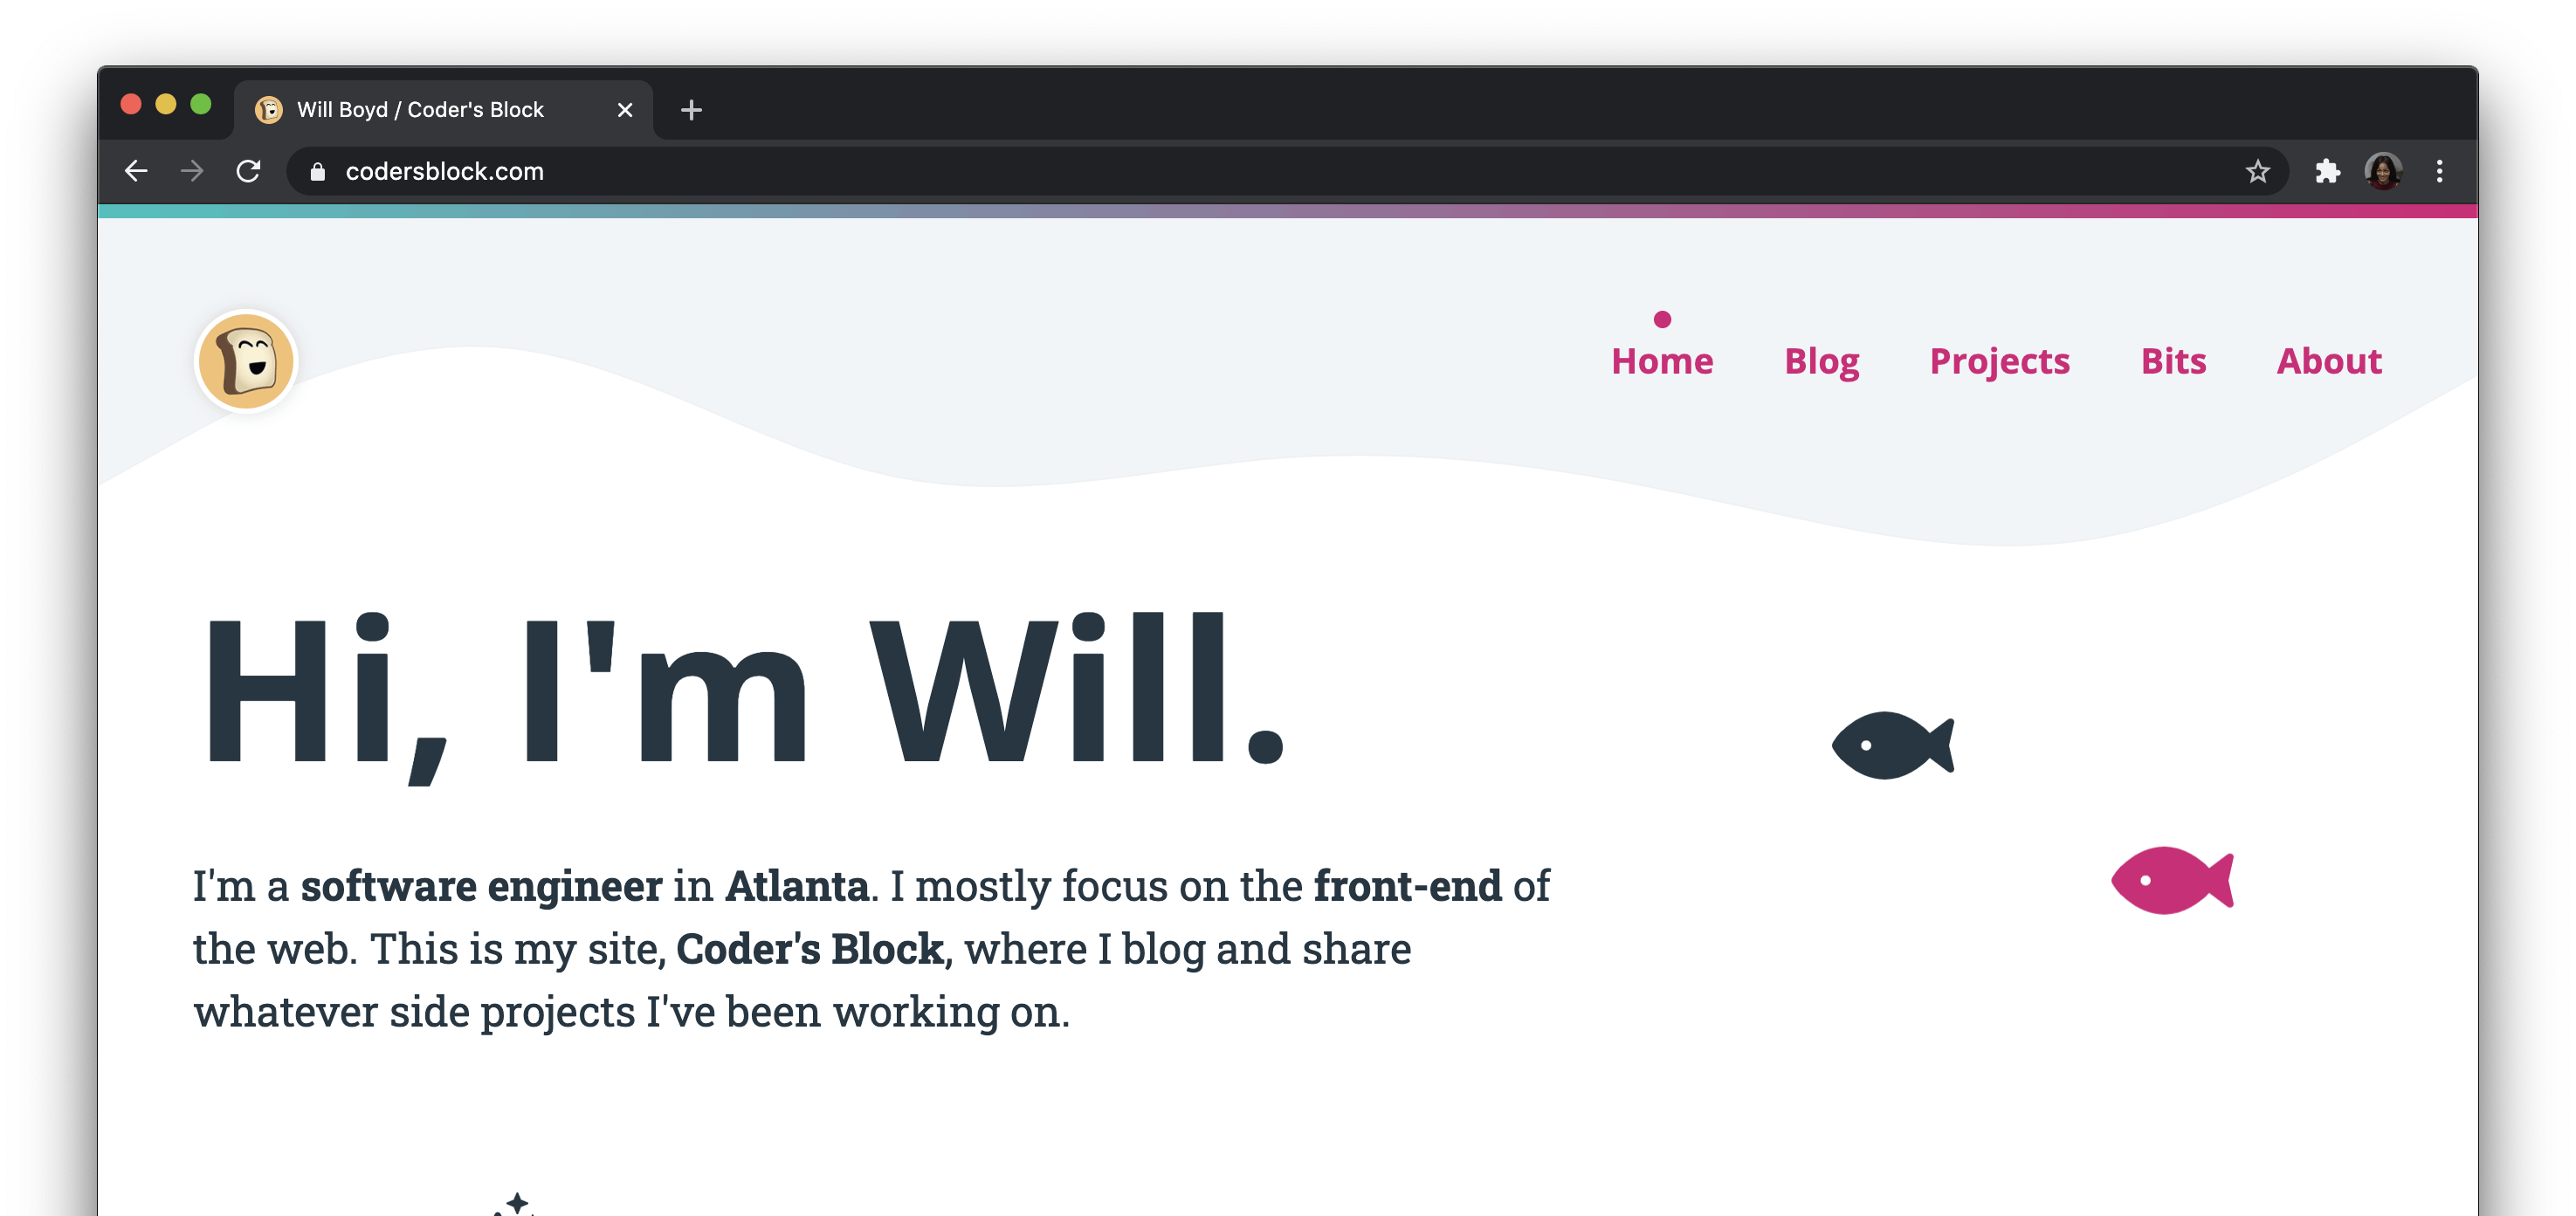 Will's profile